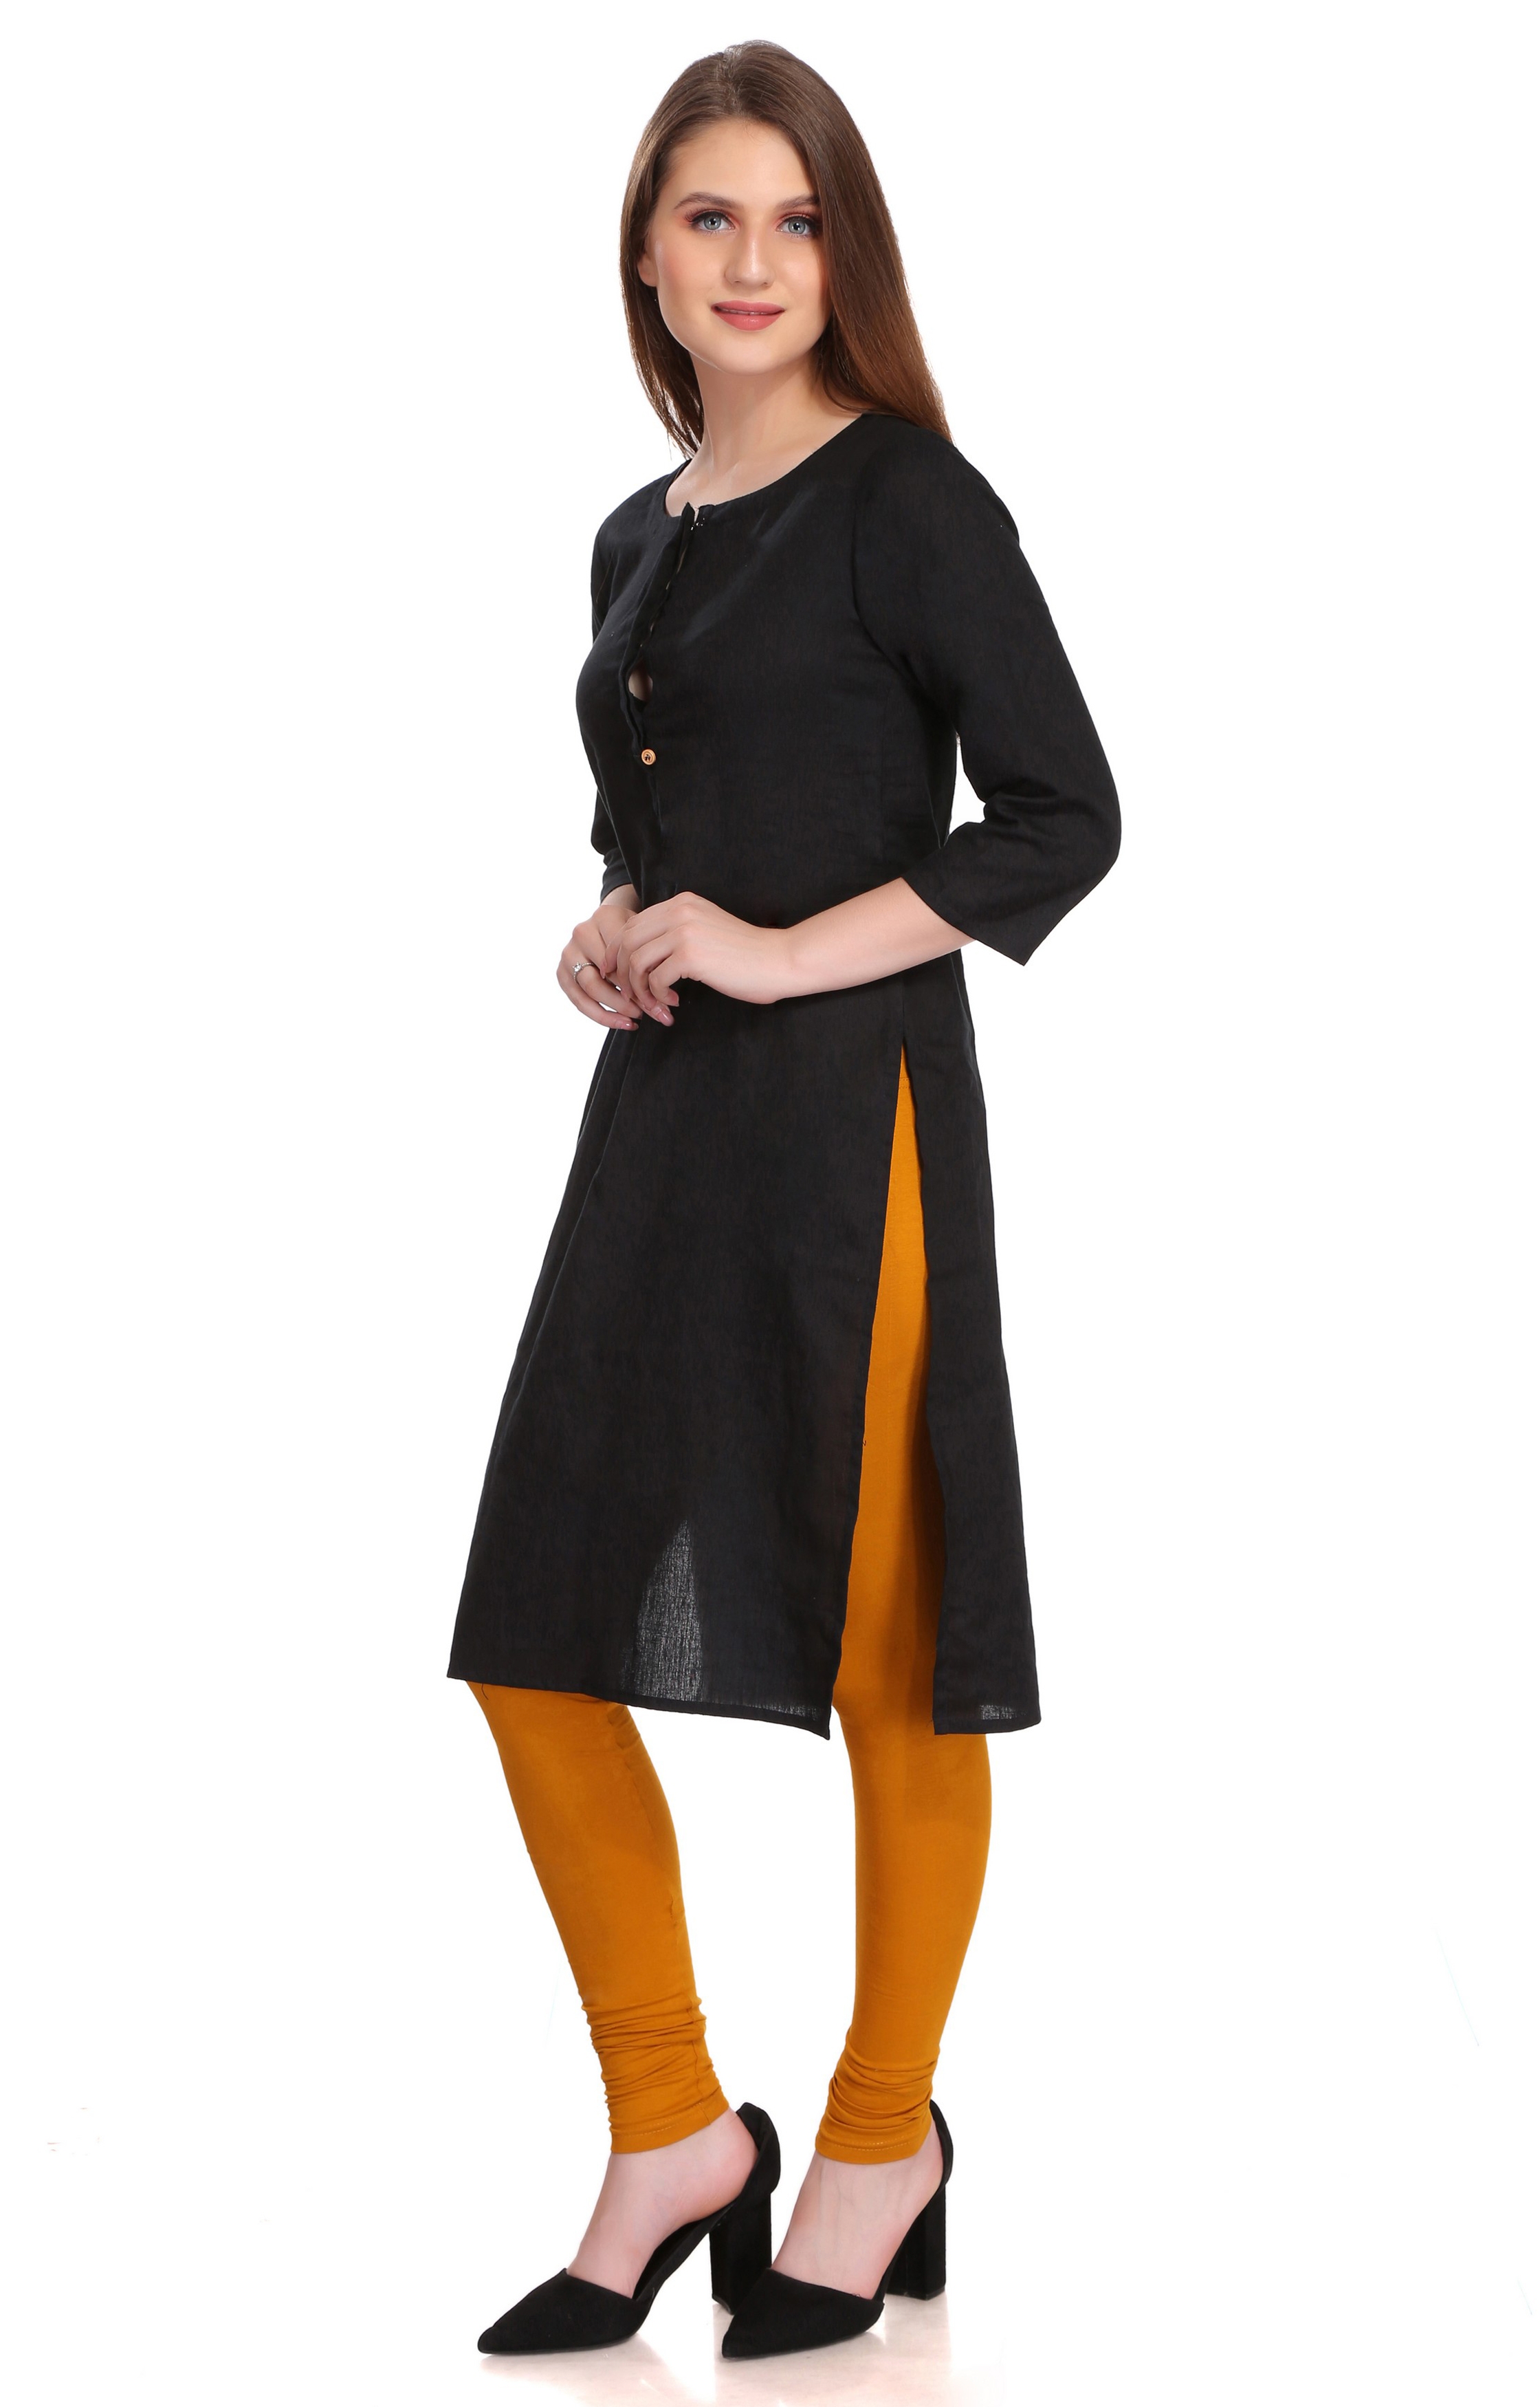 Colorfit | Colorfit Cotton Lycra Churidar Length Leggings for Women 1